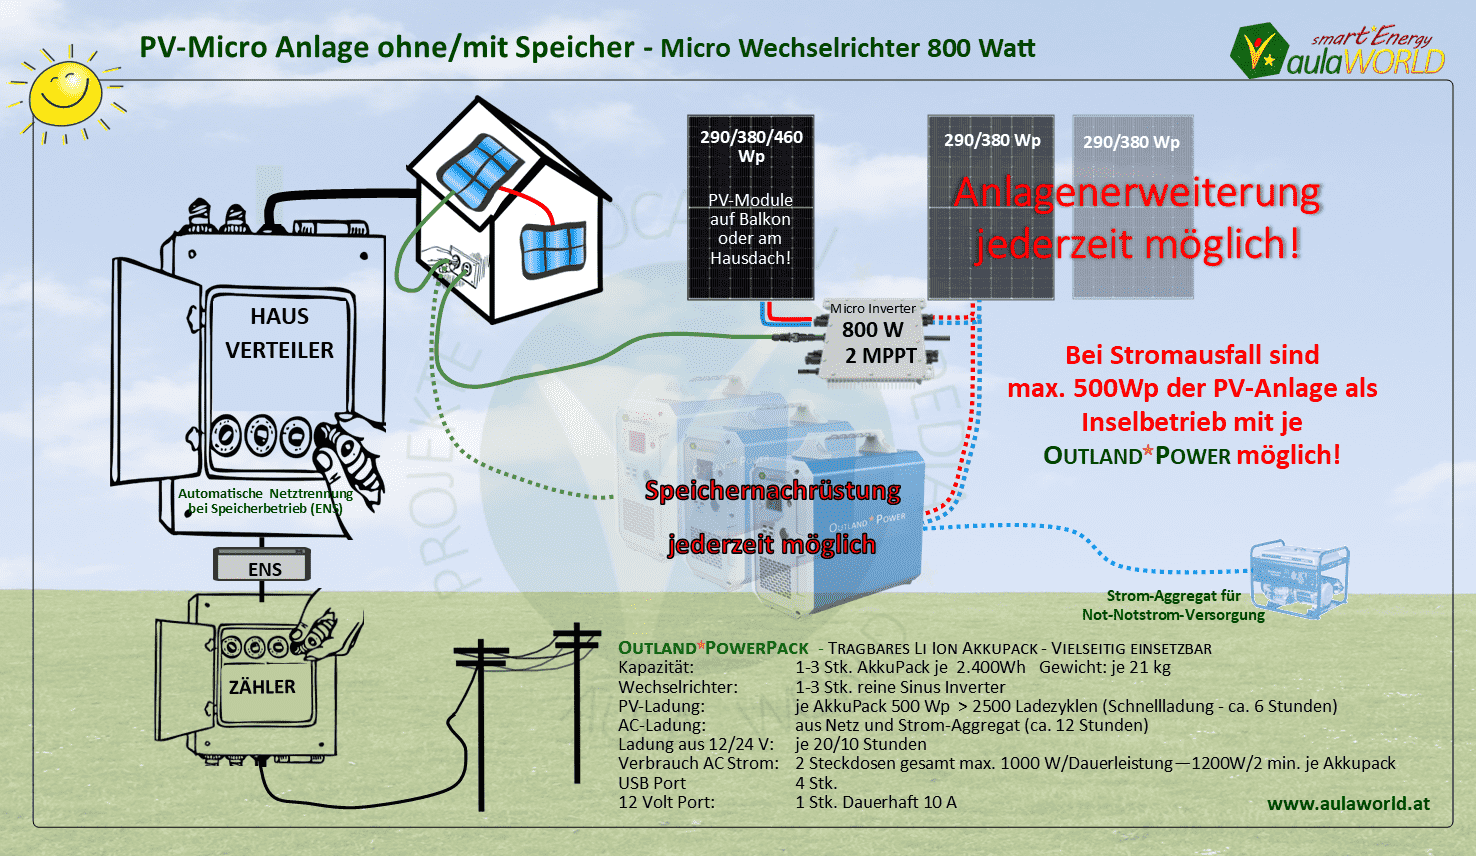 Photovoltaik-Kleinkraftwerk  920 Wp  - ÜBERSICHT 380 bis 1380 Wp